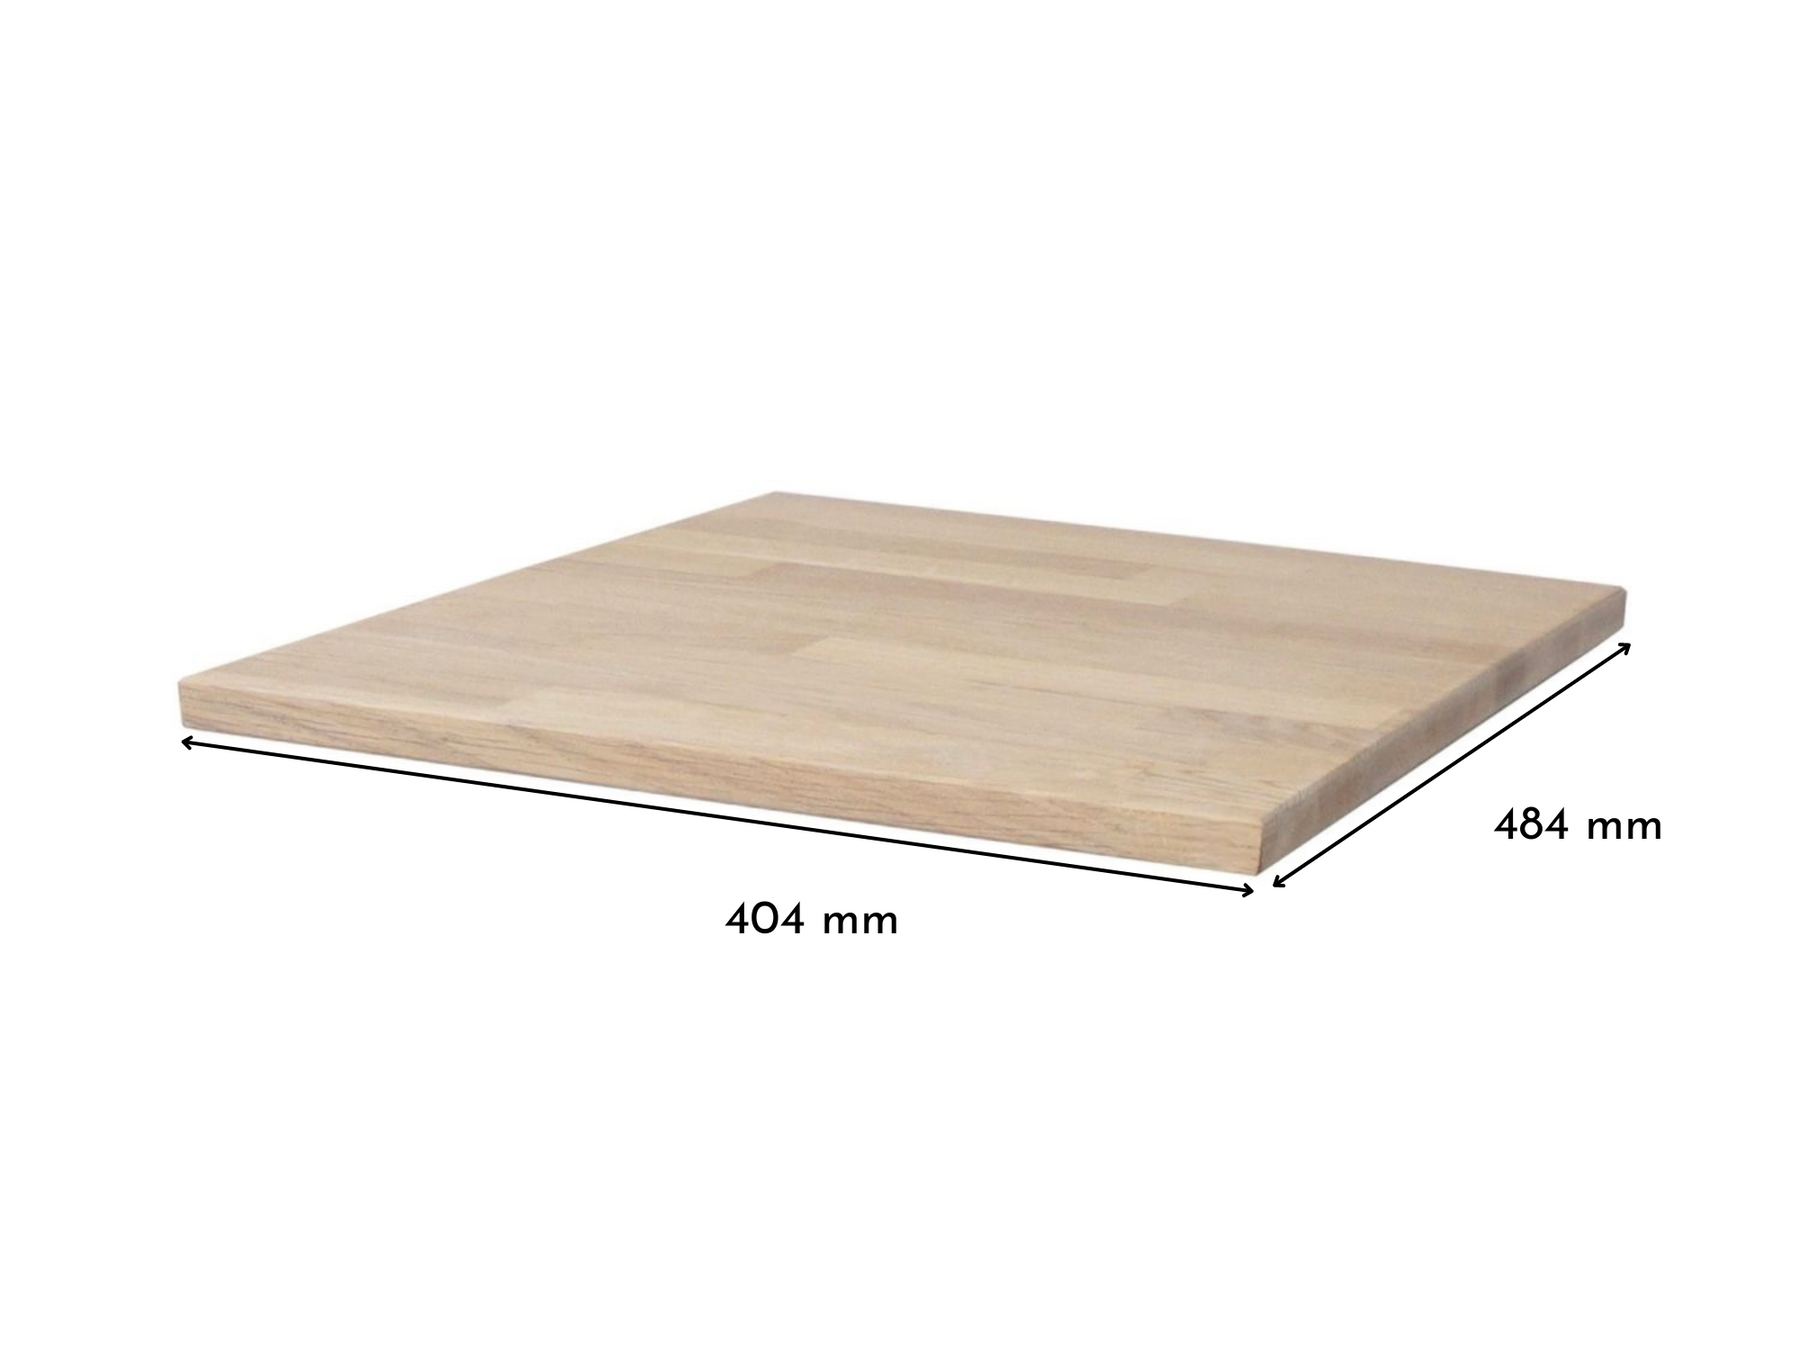 Malm Nachttisch mit Massivholzdeckplatte in Eiche Weiß geölt in 19 mm Stärke mit Bemaßung 404 mm x 484 mm 